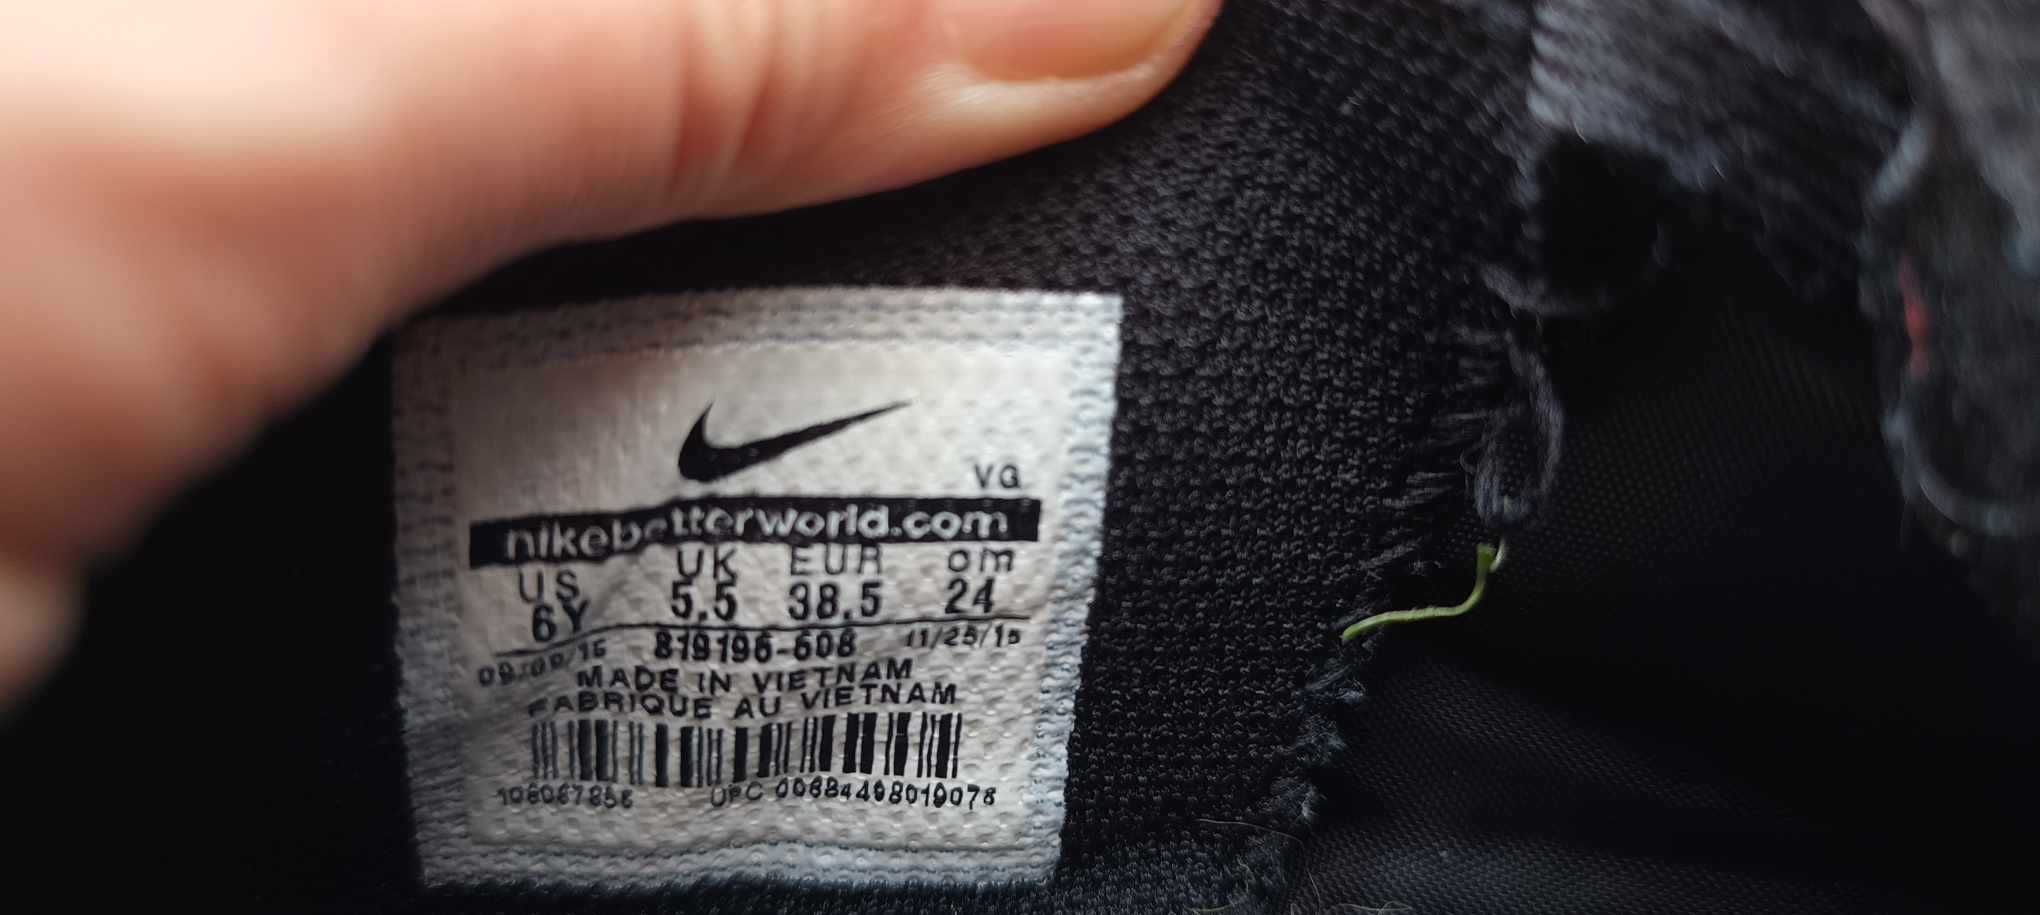 Halówki Nike Tiempo rozmiar 38,5